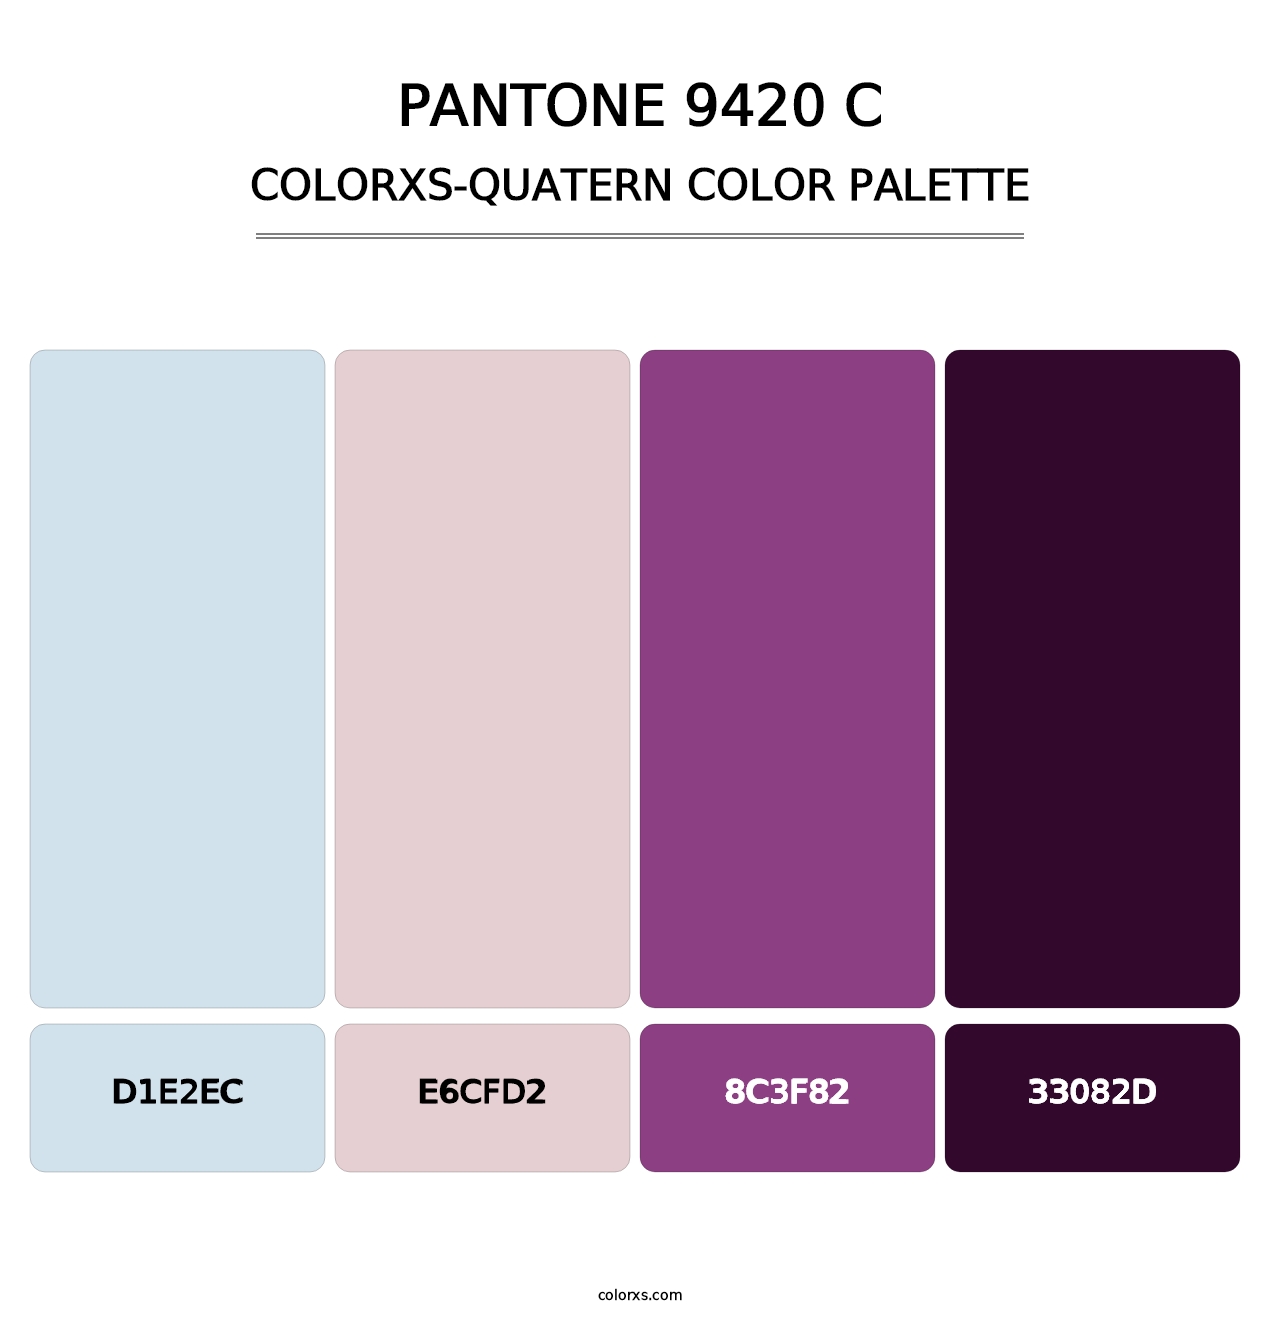 PANTONE 9420 C - Colorxs Quatern Palette